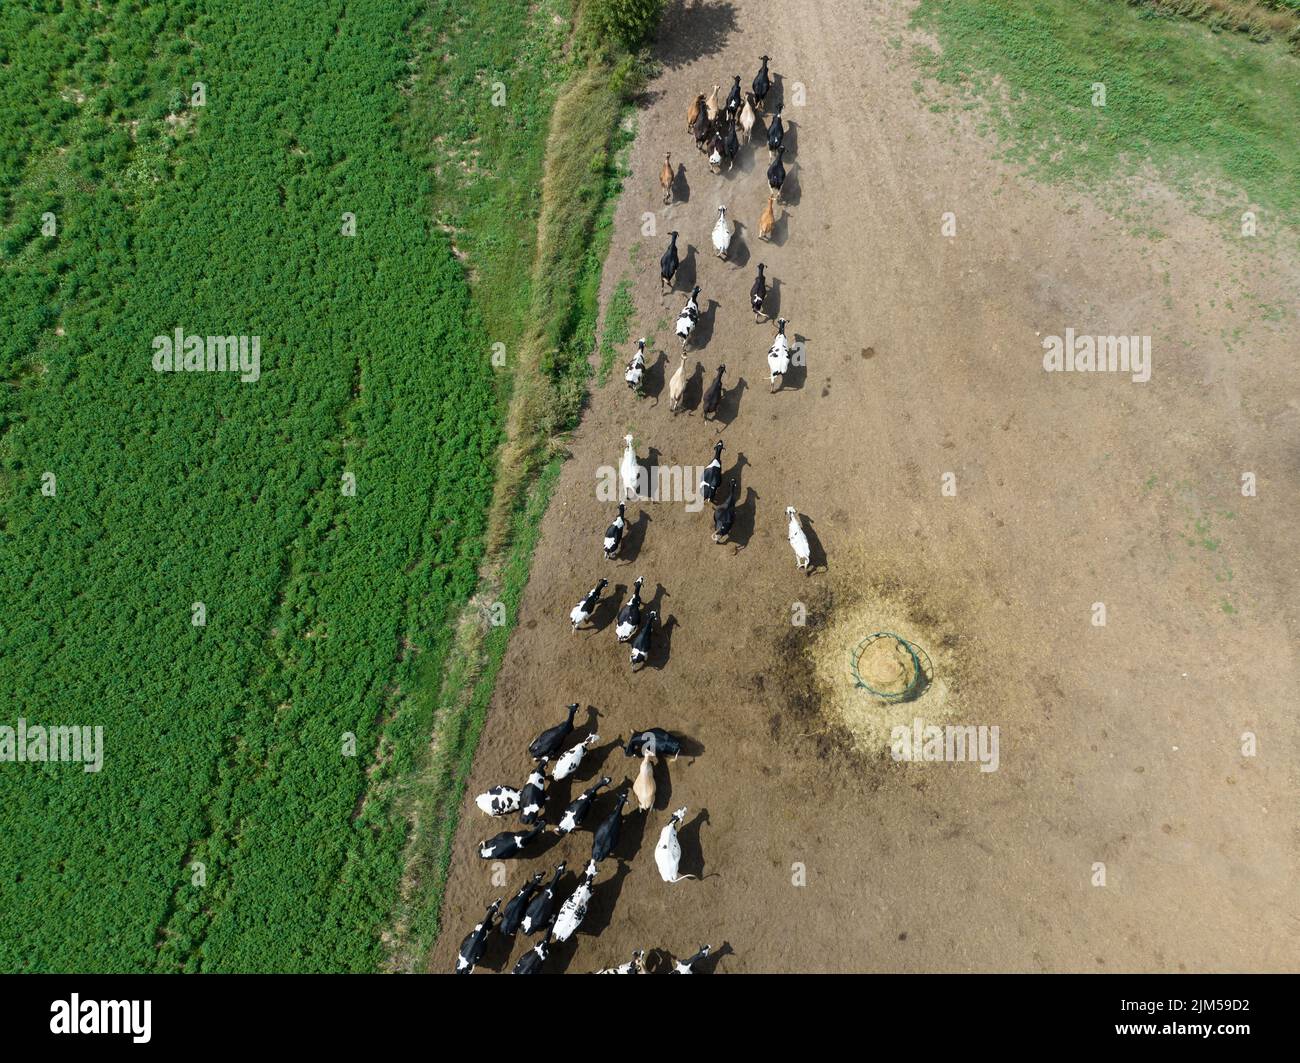 Un grupo grande de ganado lechero, vacas, toros son vistos desde arriba mientras se mueven en una granja grande. Foto de stock